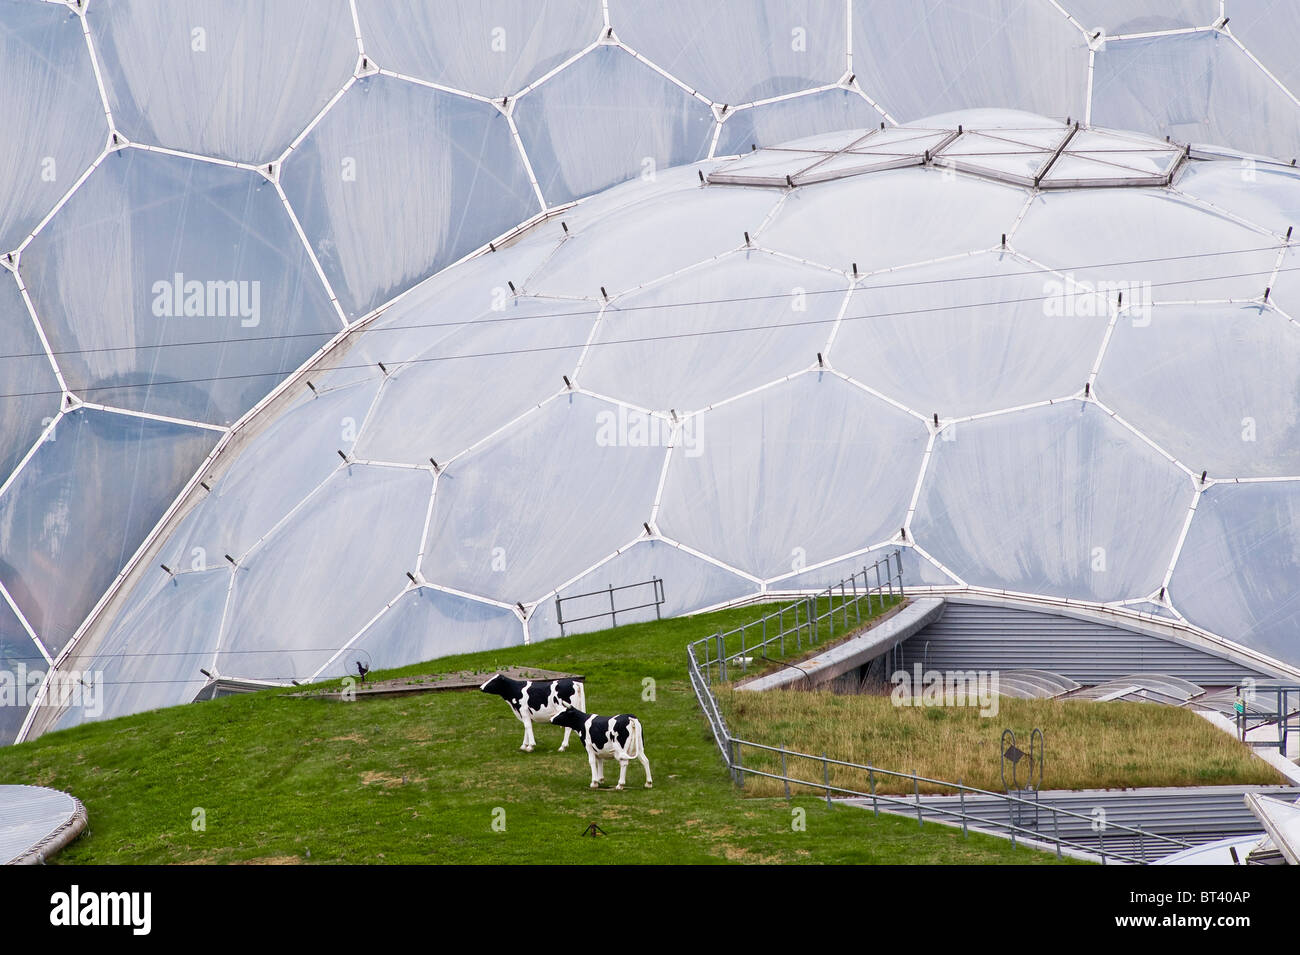 Les vaches modèles se broutent sur un toit en herbe sous les énormes biomes à l'Eden Project, Cornwall, Royaume-Uni Banque D'Images